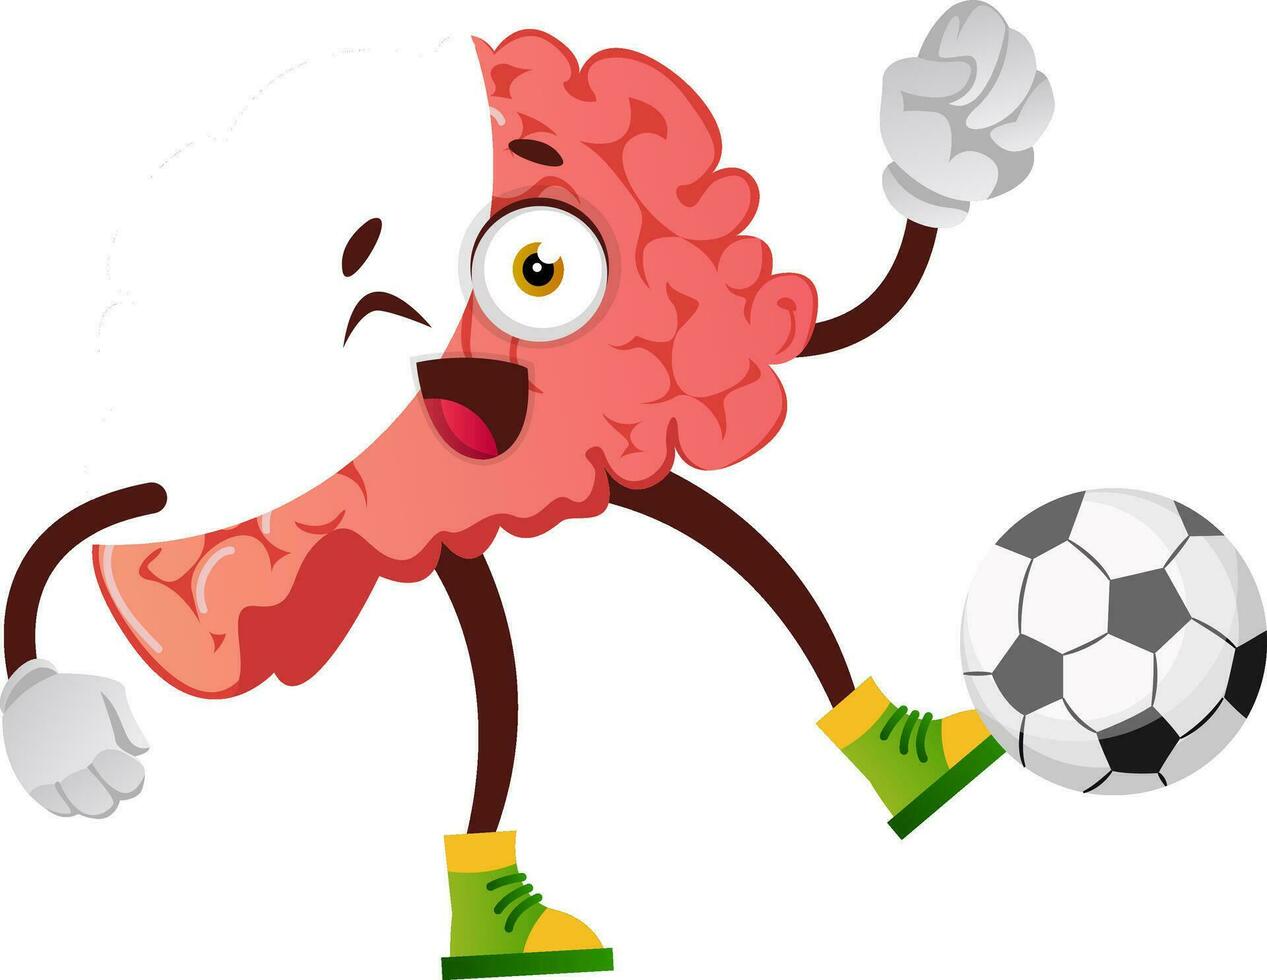 hjärna är spelar fotboll, illustration, vektor på vit bakgrund.